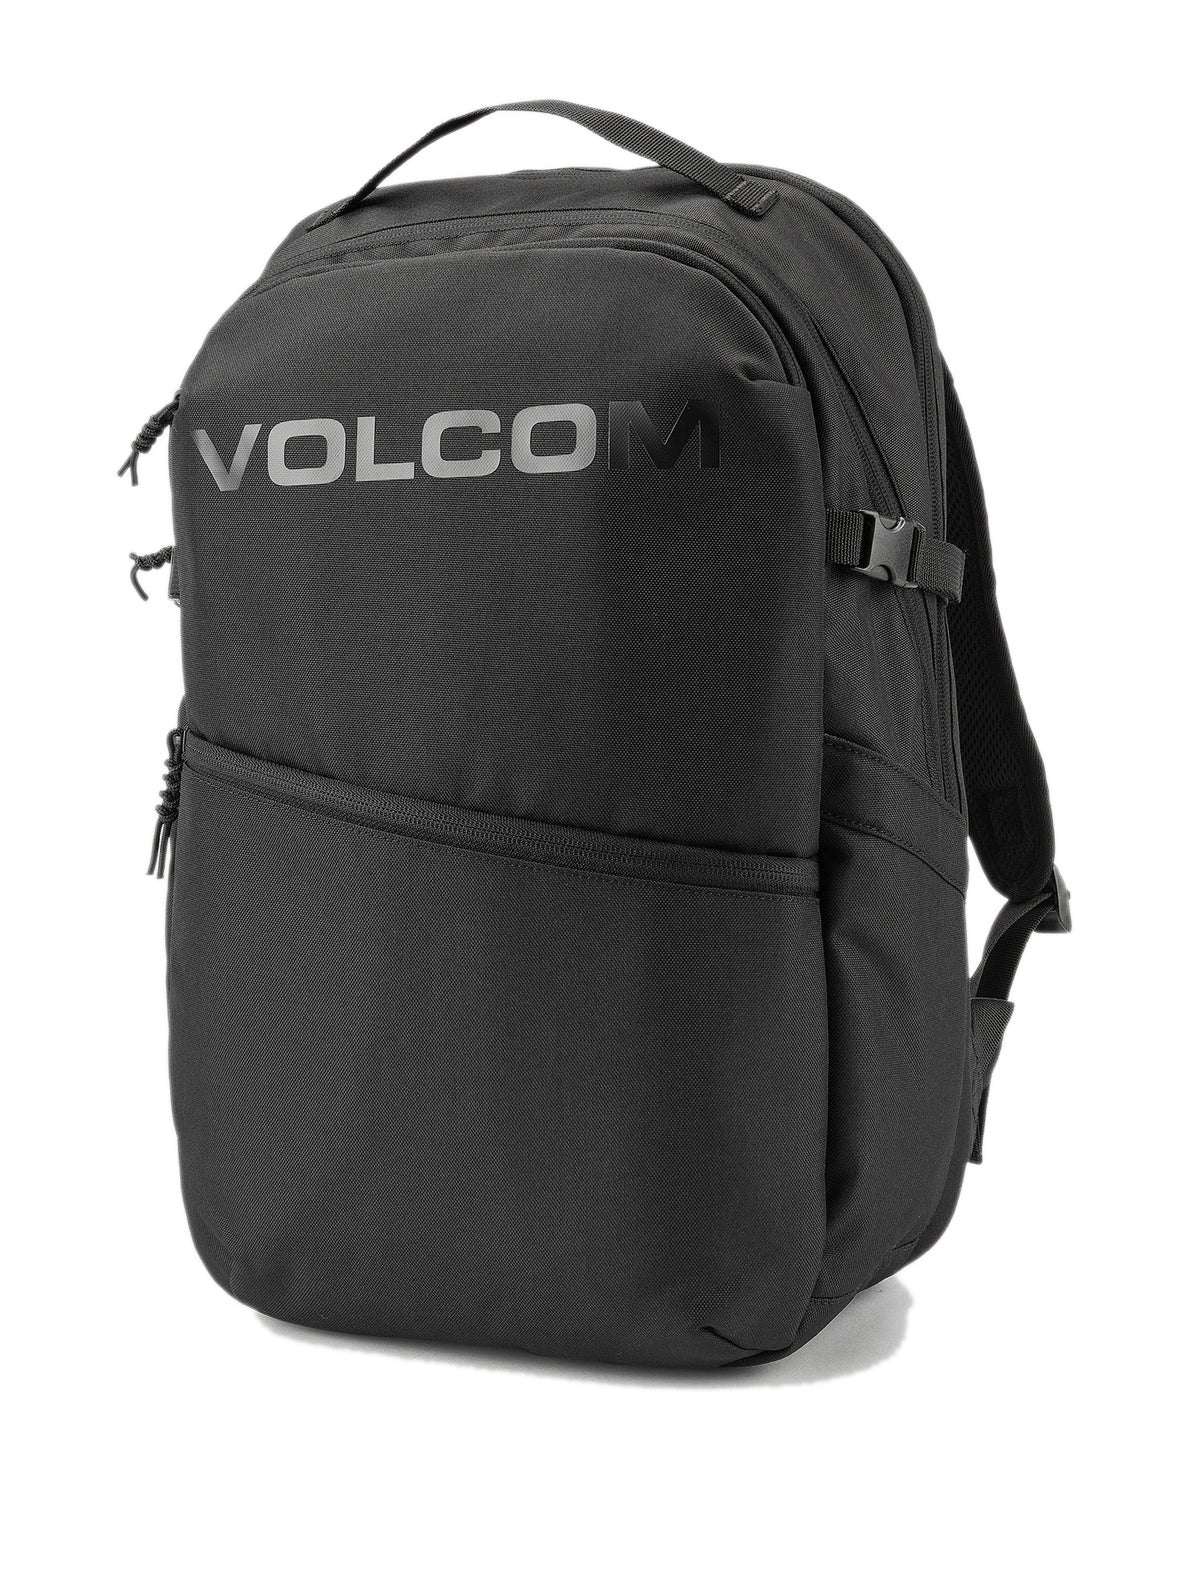 Volcom Roamer 2.0 Backpack Black